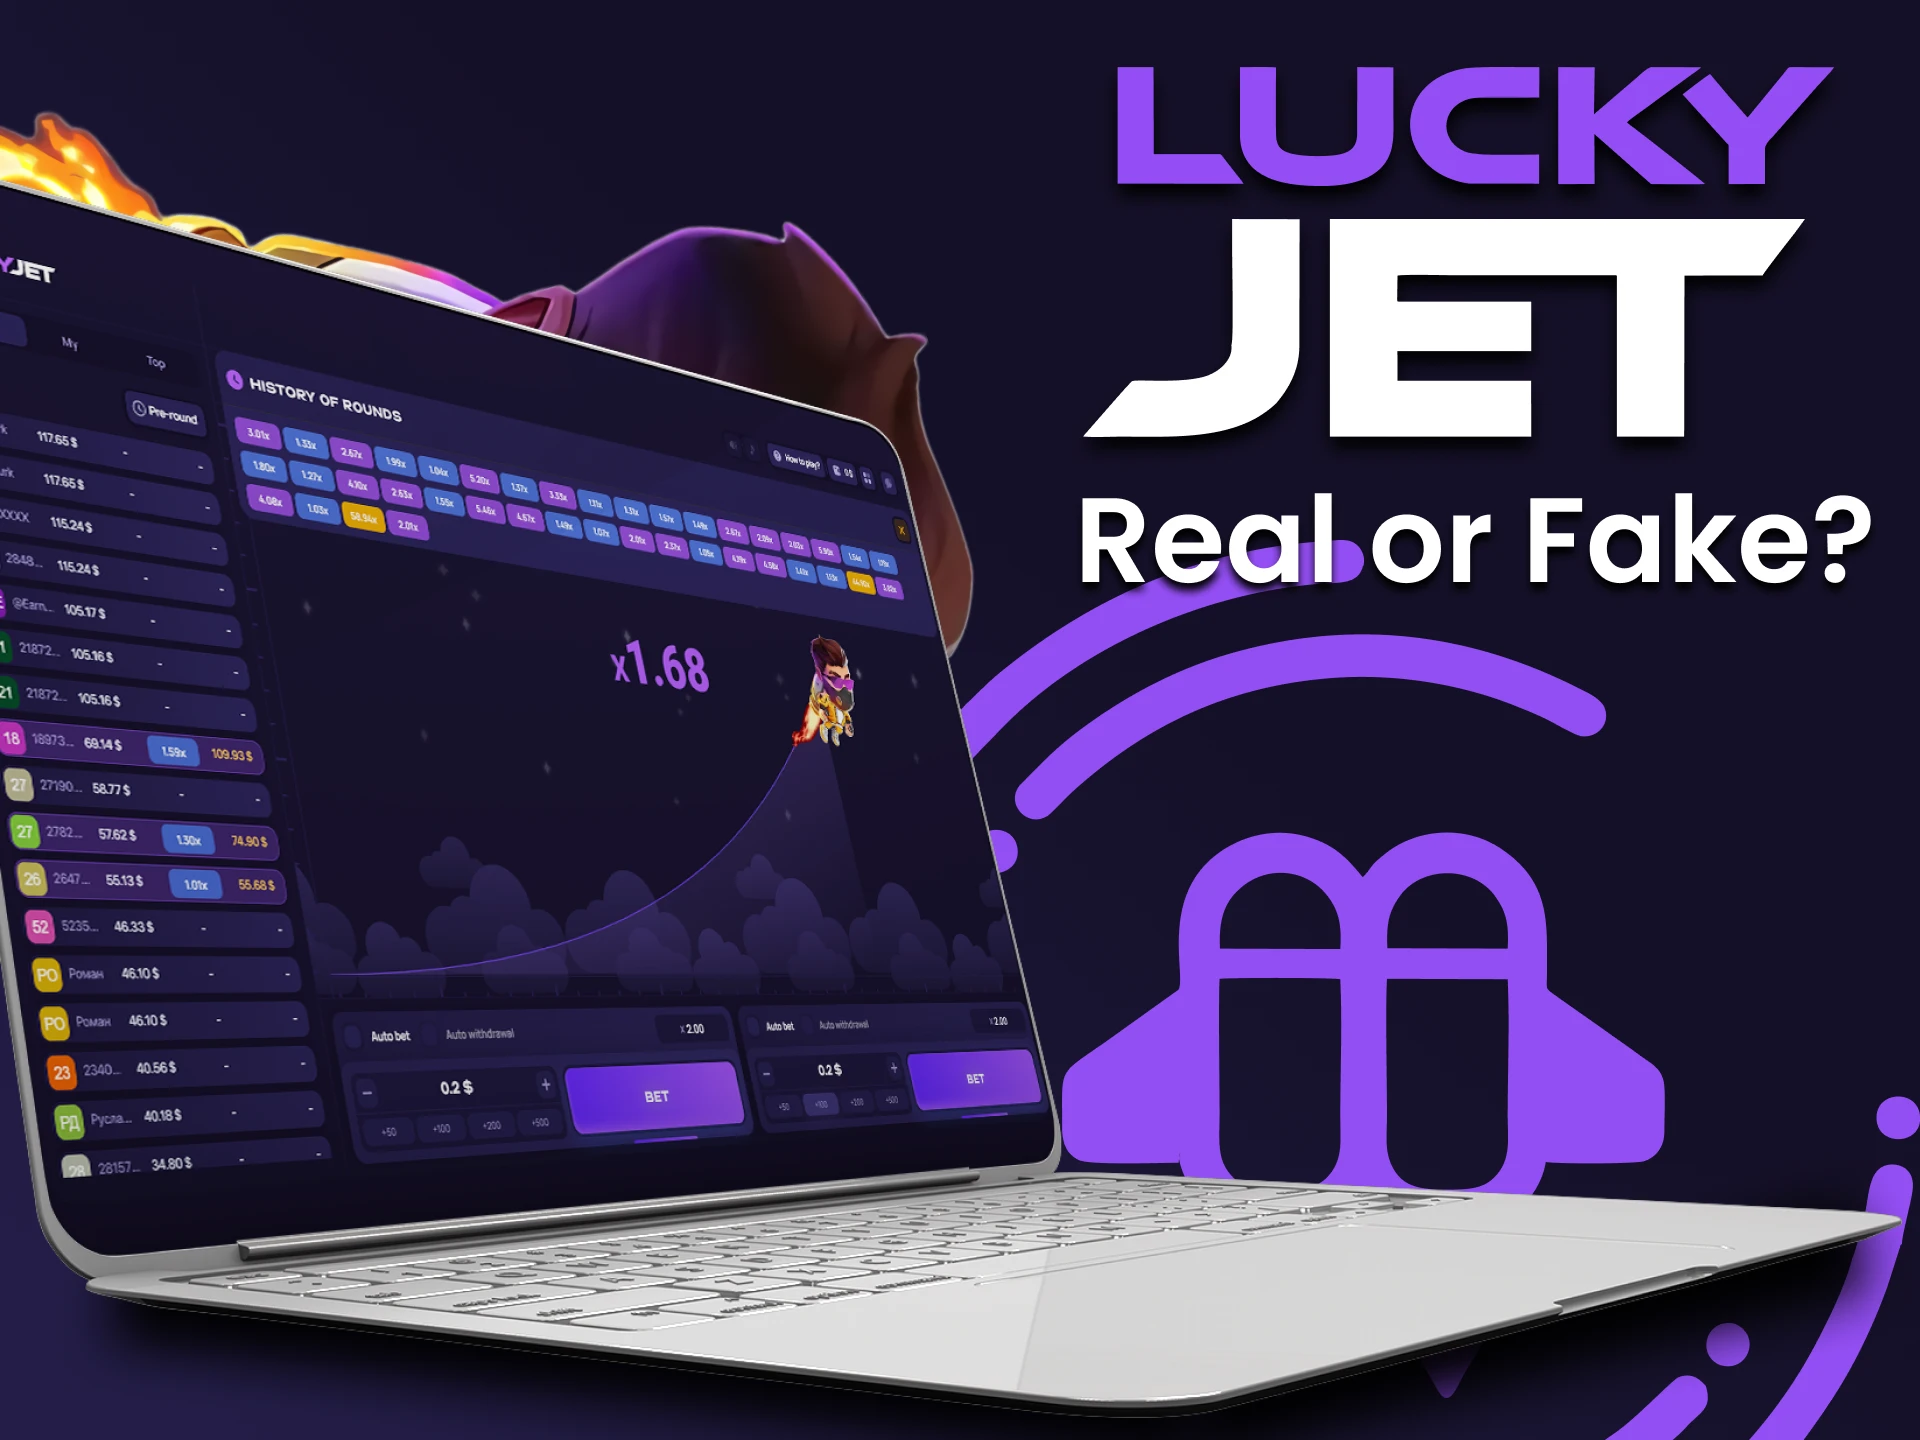 El juego Lucky Jet lleva mucho tiempo en el mercado y se ha ganado la confianza de muchos jugadores.